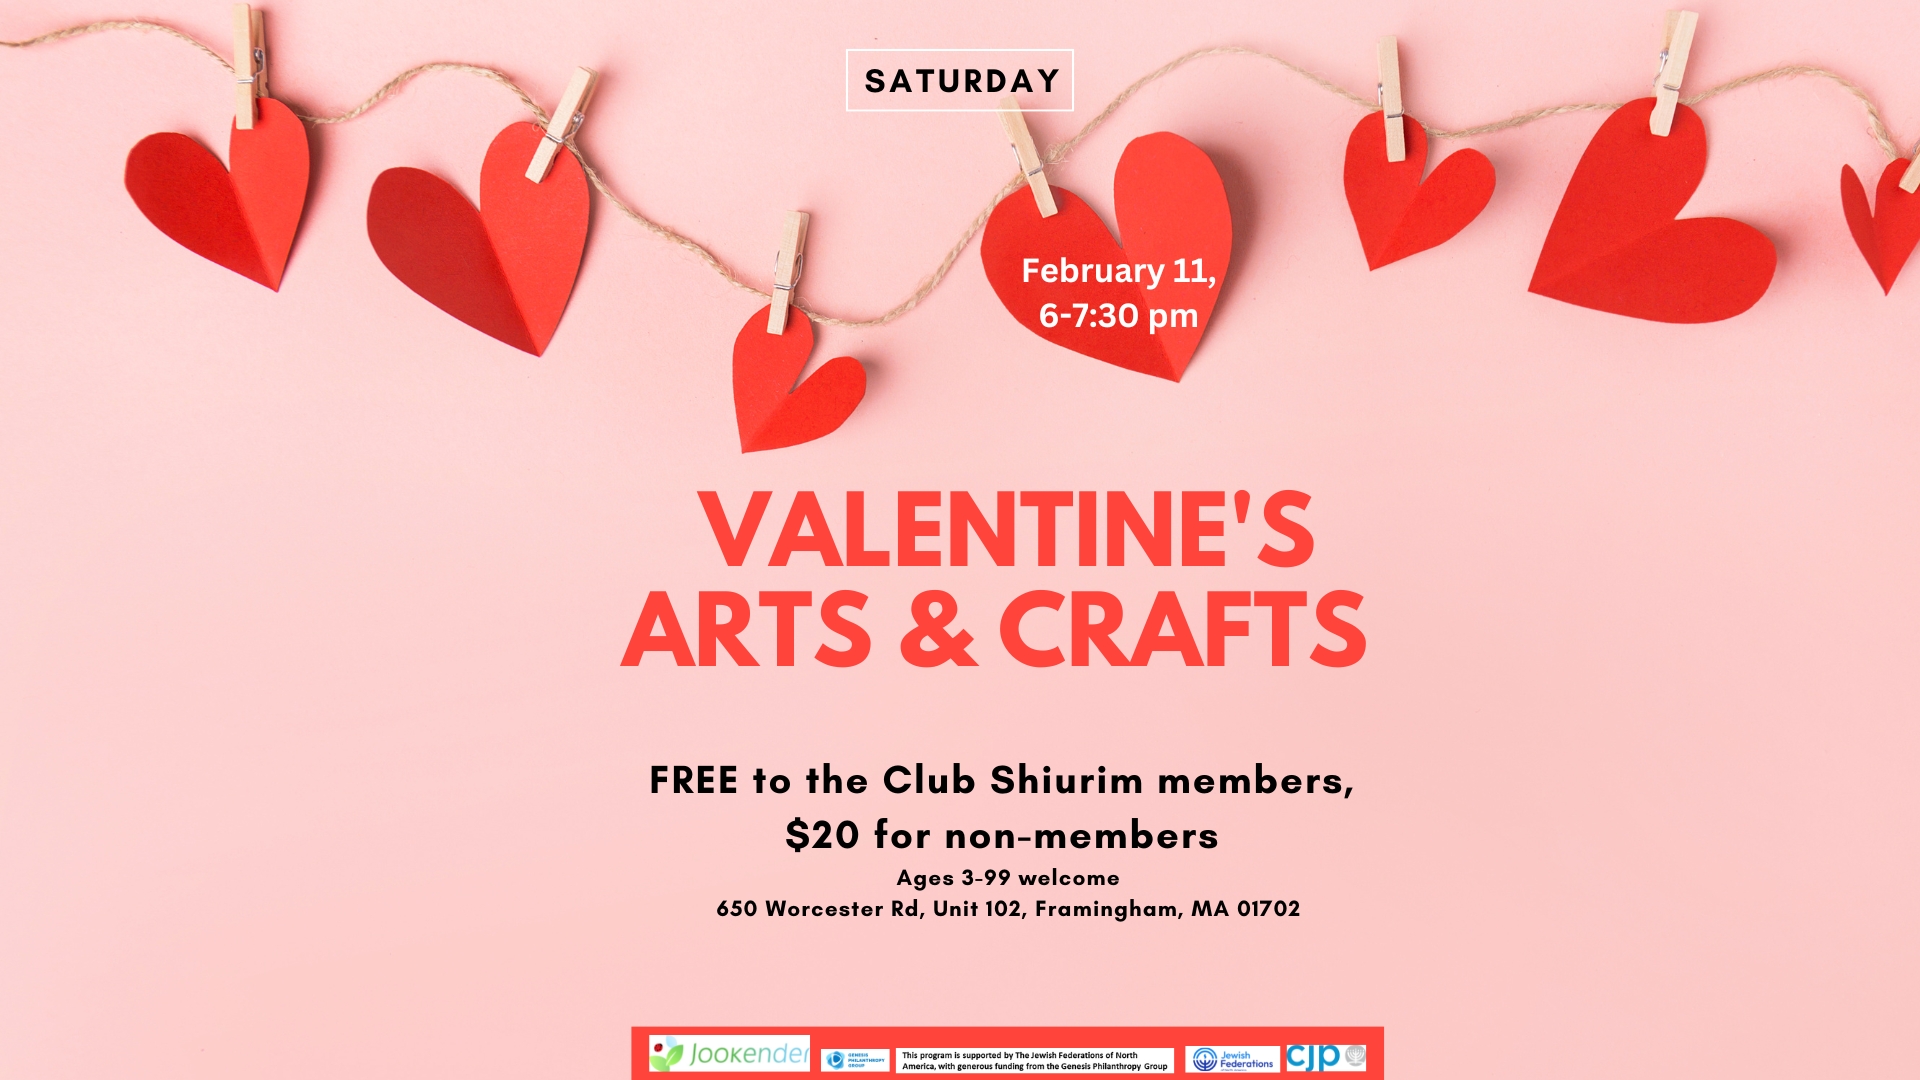 Valentine's Arts & Crafts